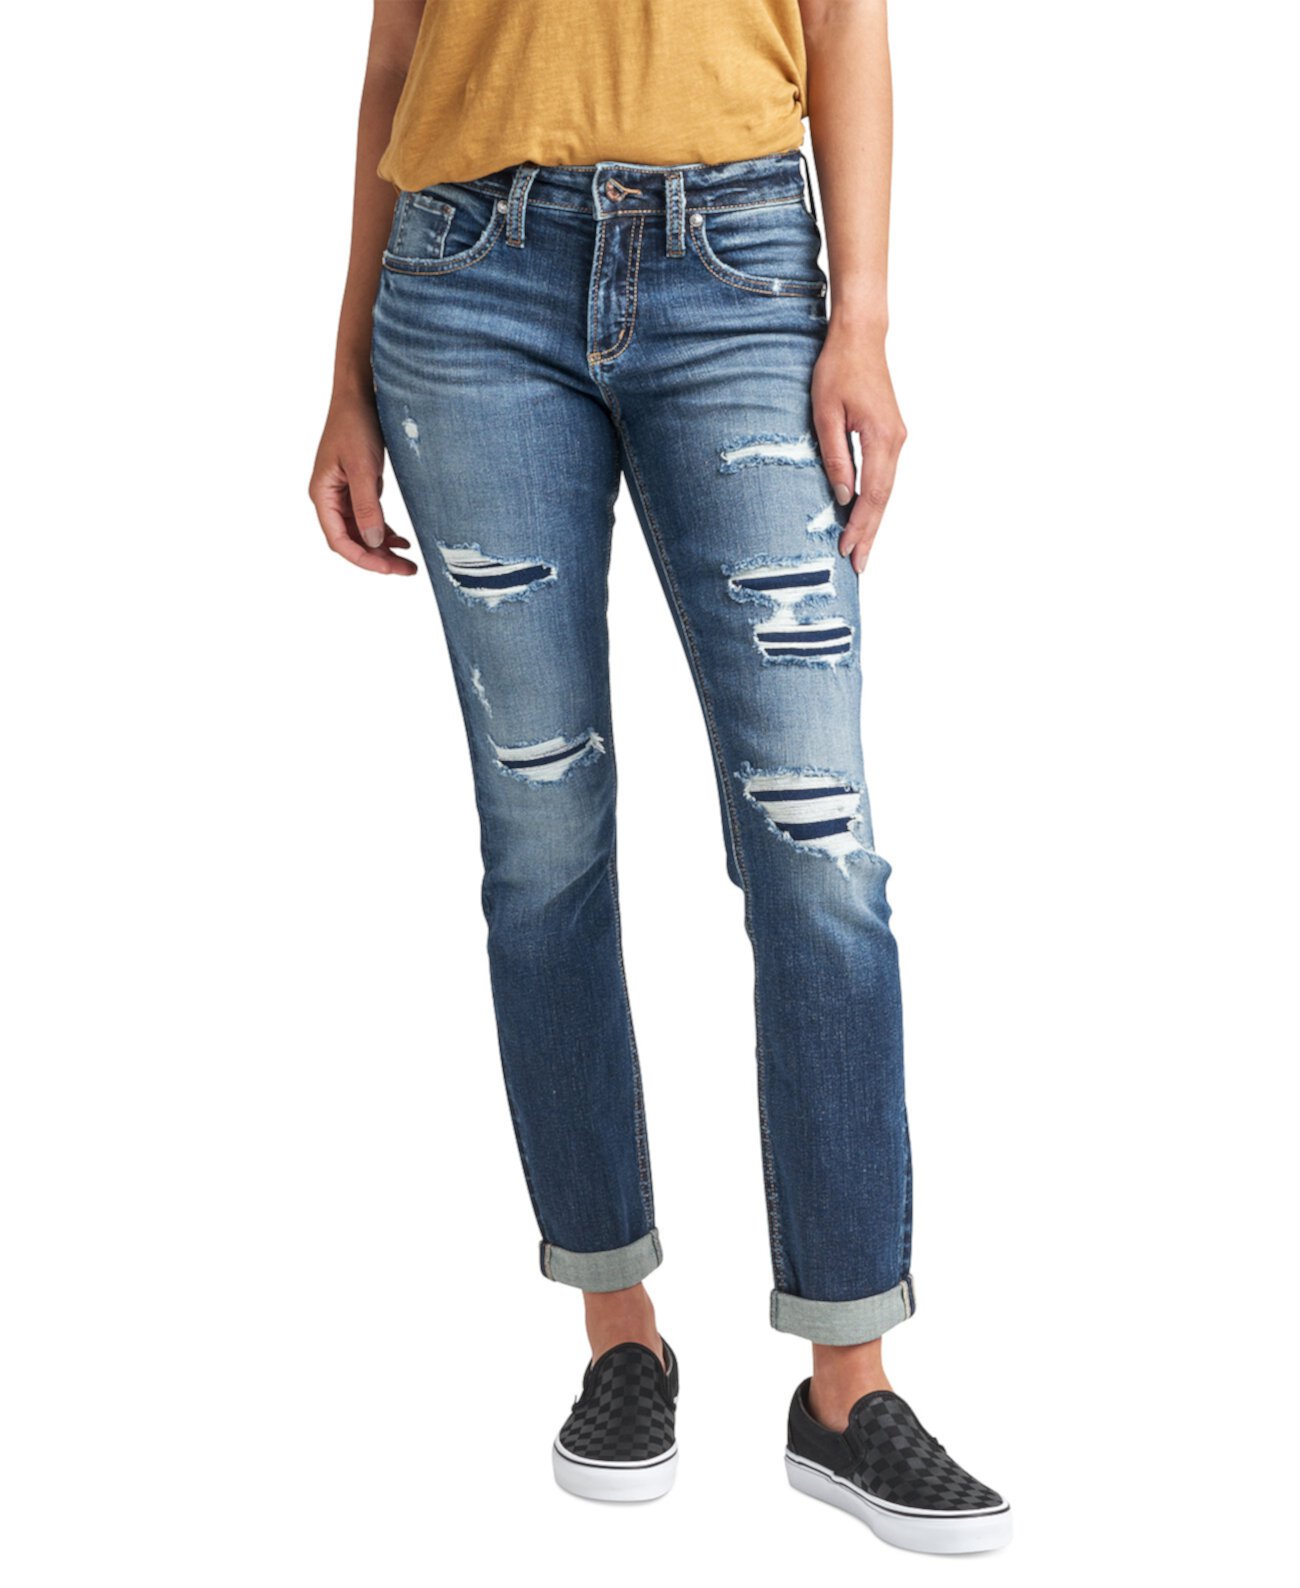 Узкие джинсы-бойфренды со средней посадкой Silver Jeans Co.